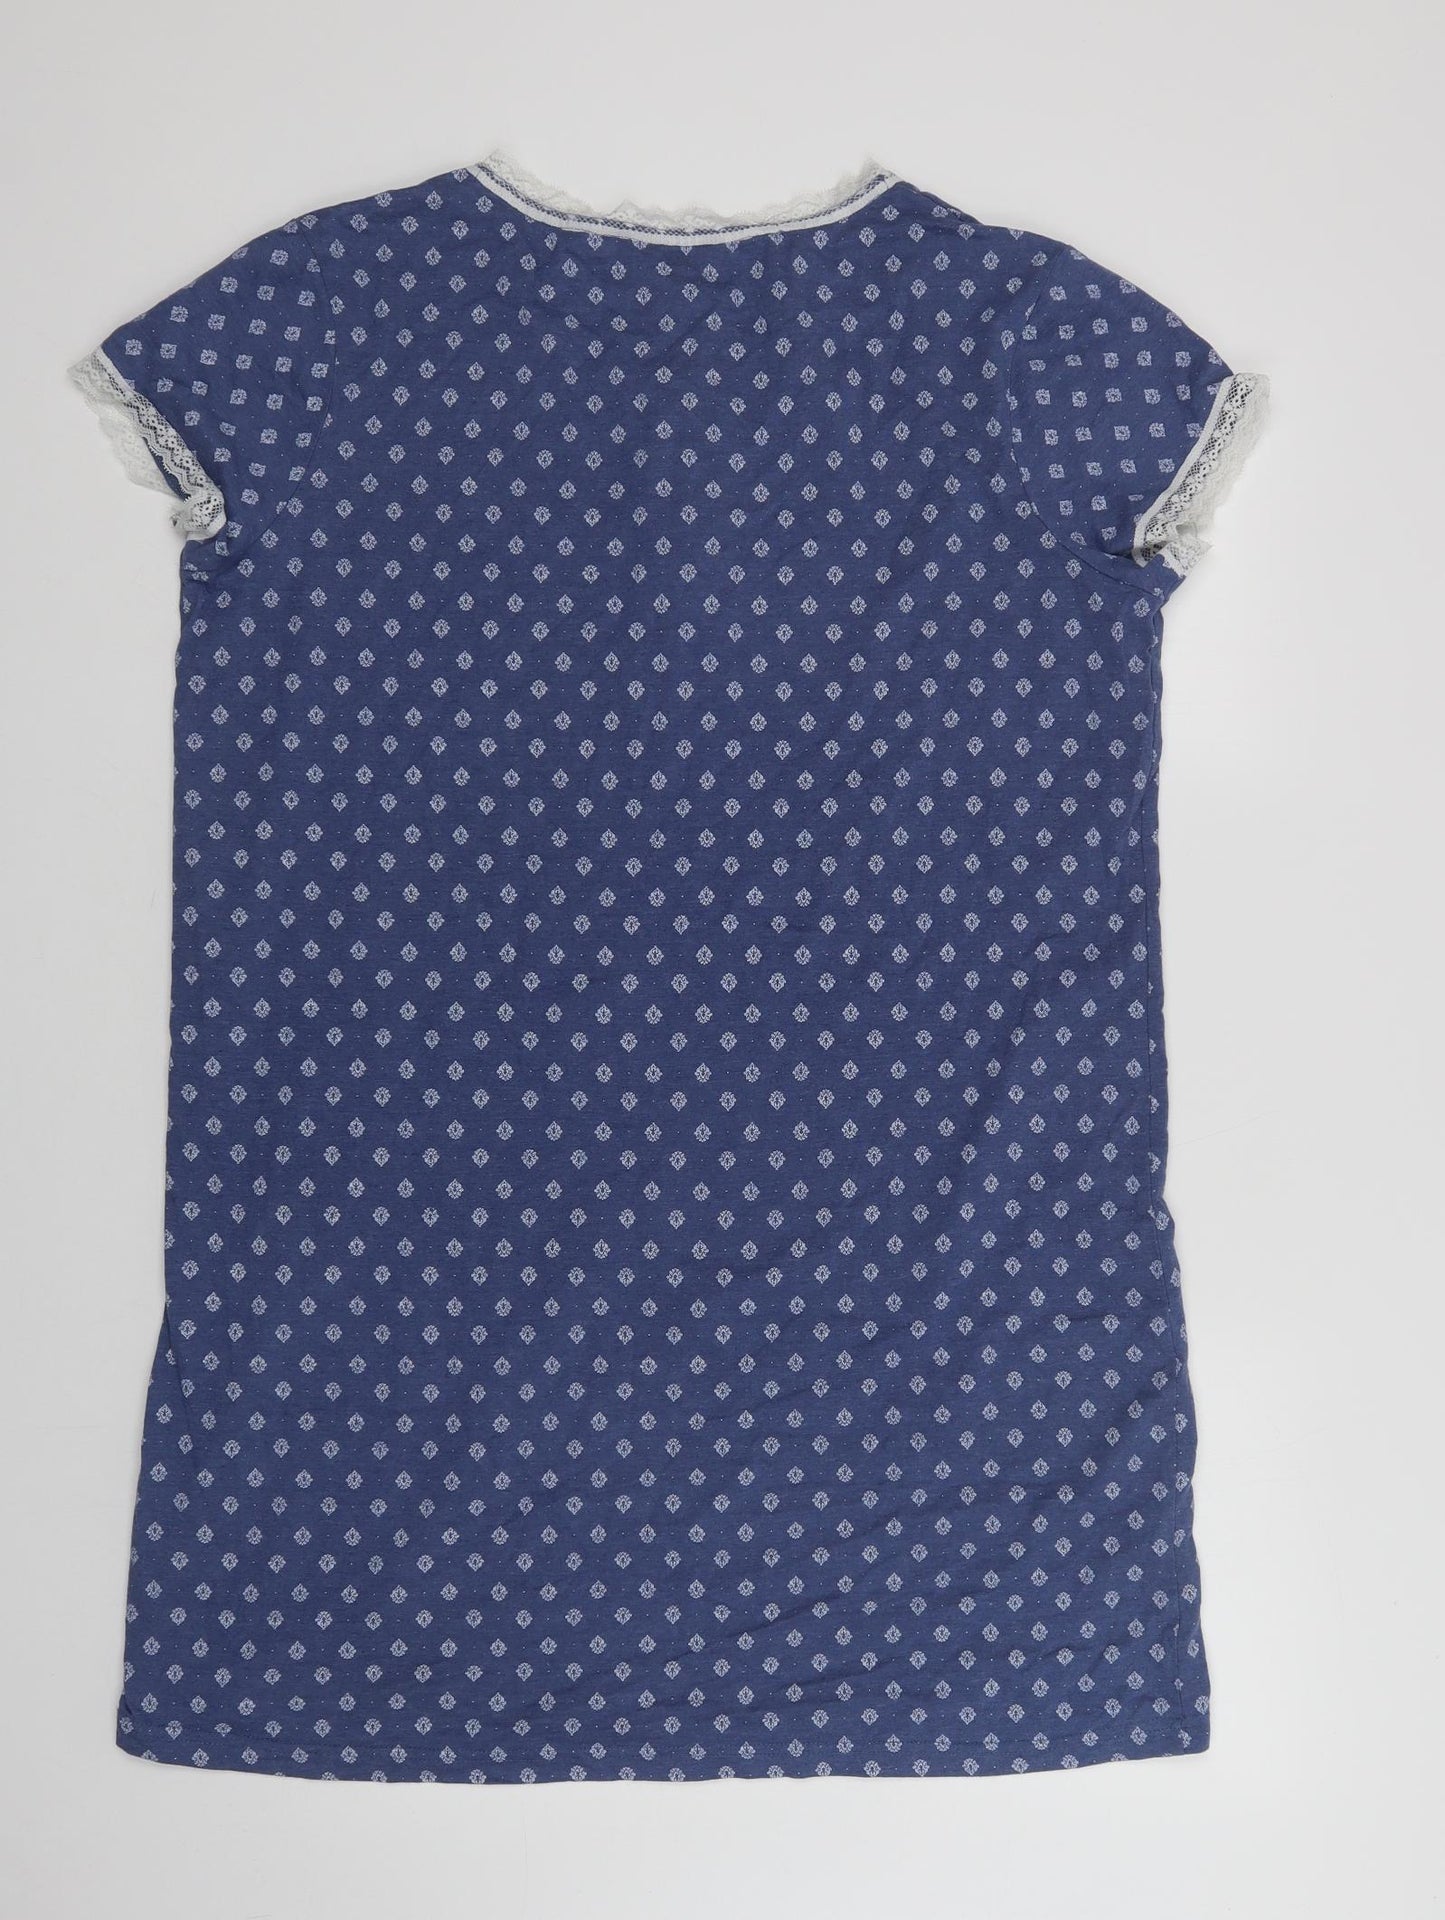 Dunnes Stores Womens Blue Geometric Cotton Chemise Dress Size M  Button - Lace Detail